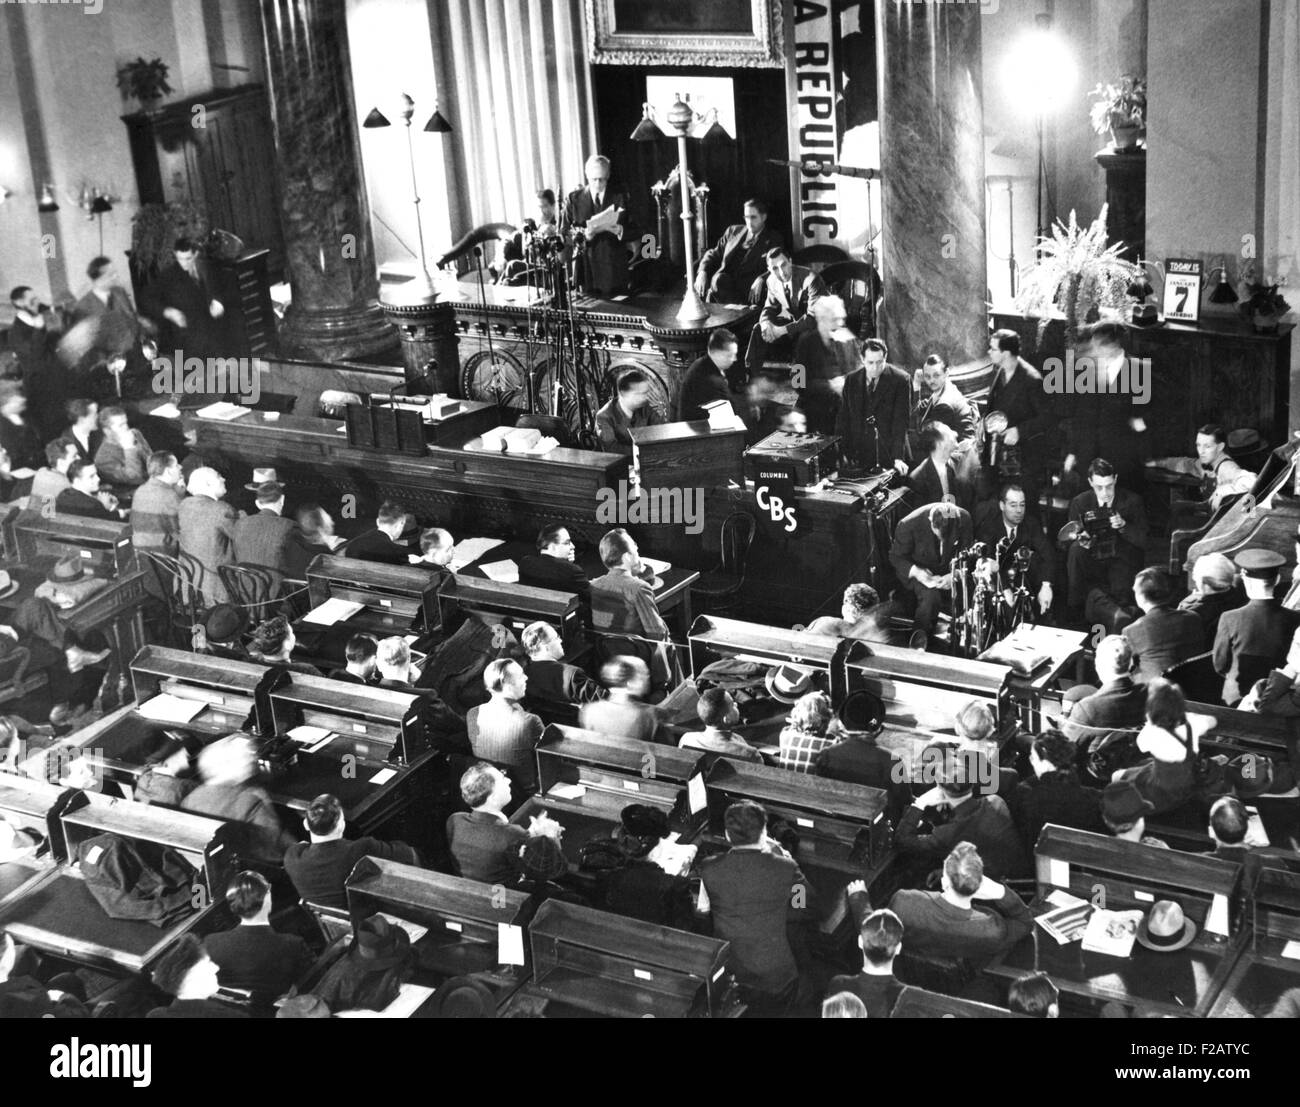 Gobernador Culbert Olson indultó a Tom Mooney, la preparación día prisionero de bombardeo. El 7 de enero de 1939. Escena en el Capitolio Estatal con como Gobernador Culbert Olson en el podio, Thomas Mooney es de centro derecha, sentados cerca de los micrófonos y un fotógrafo. (CSU 2015 11 1540) Foto de stock